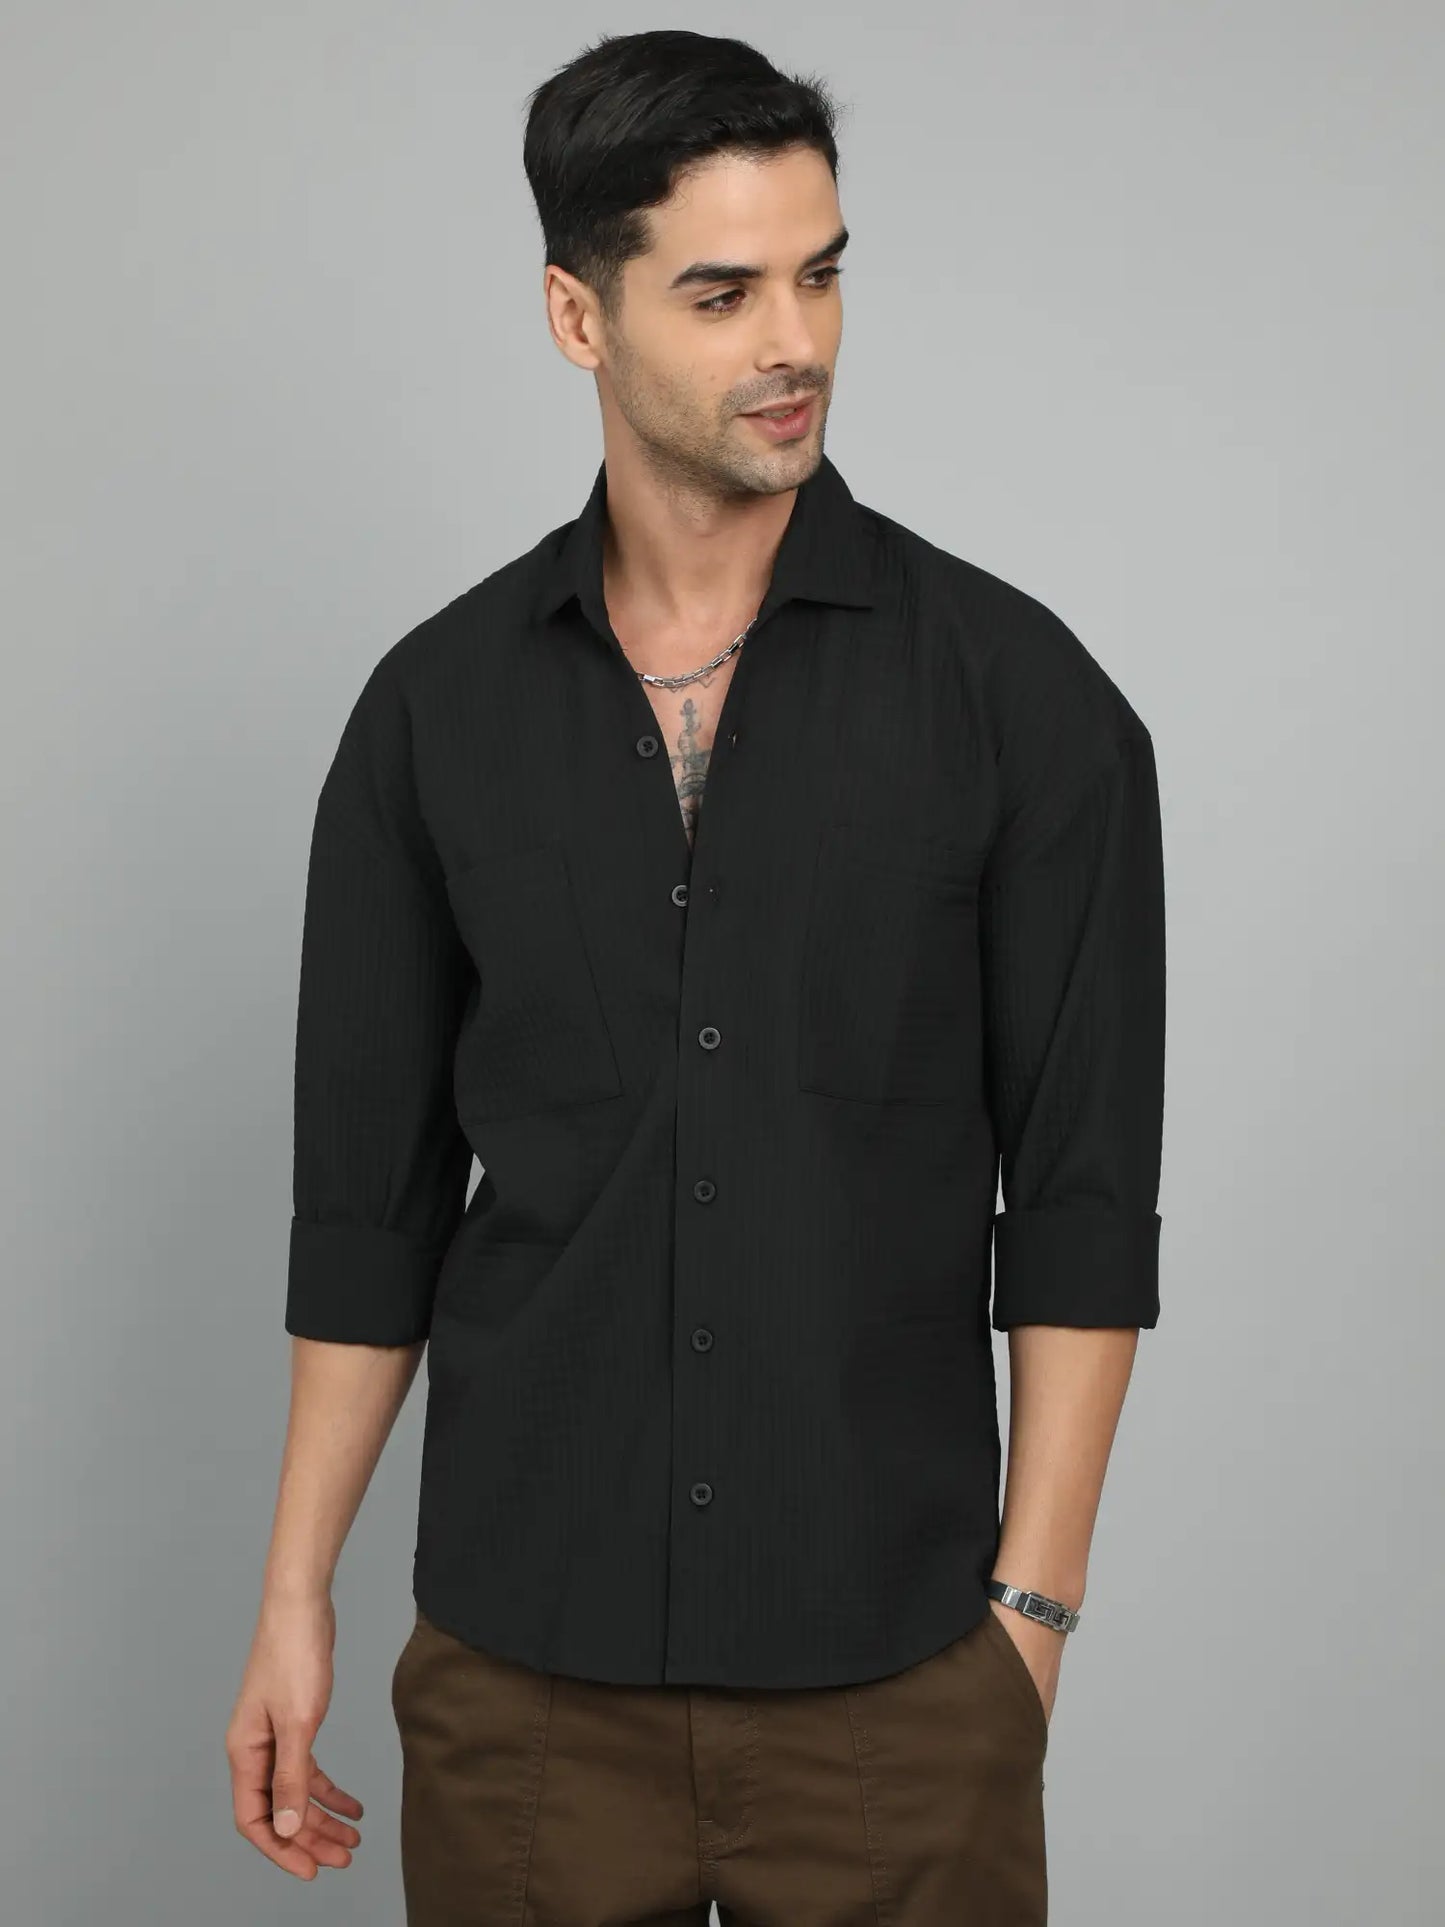 Timeless Charm Black Imported Drop Shoulder Shirt for Men 